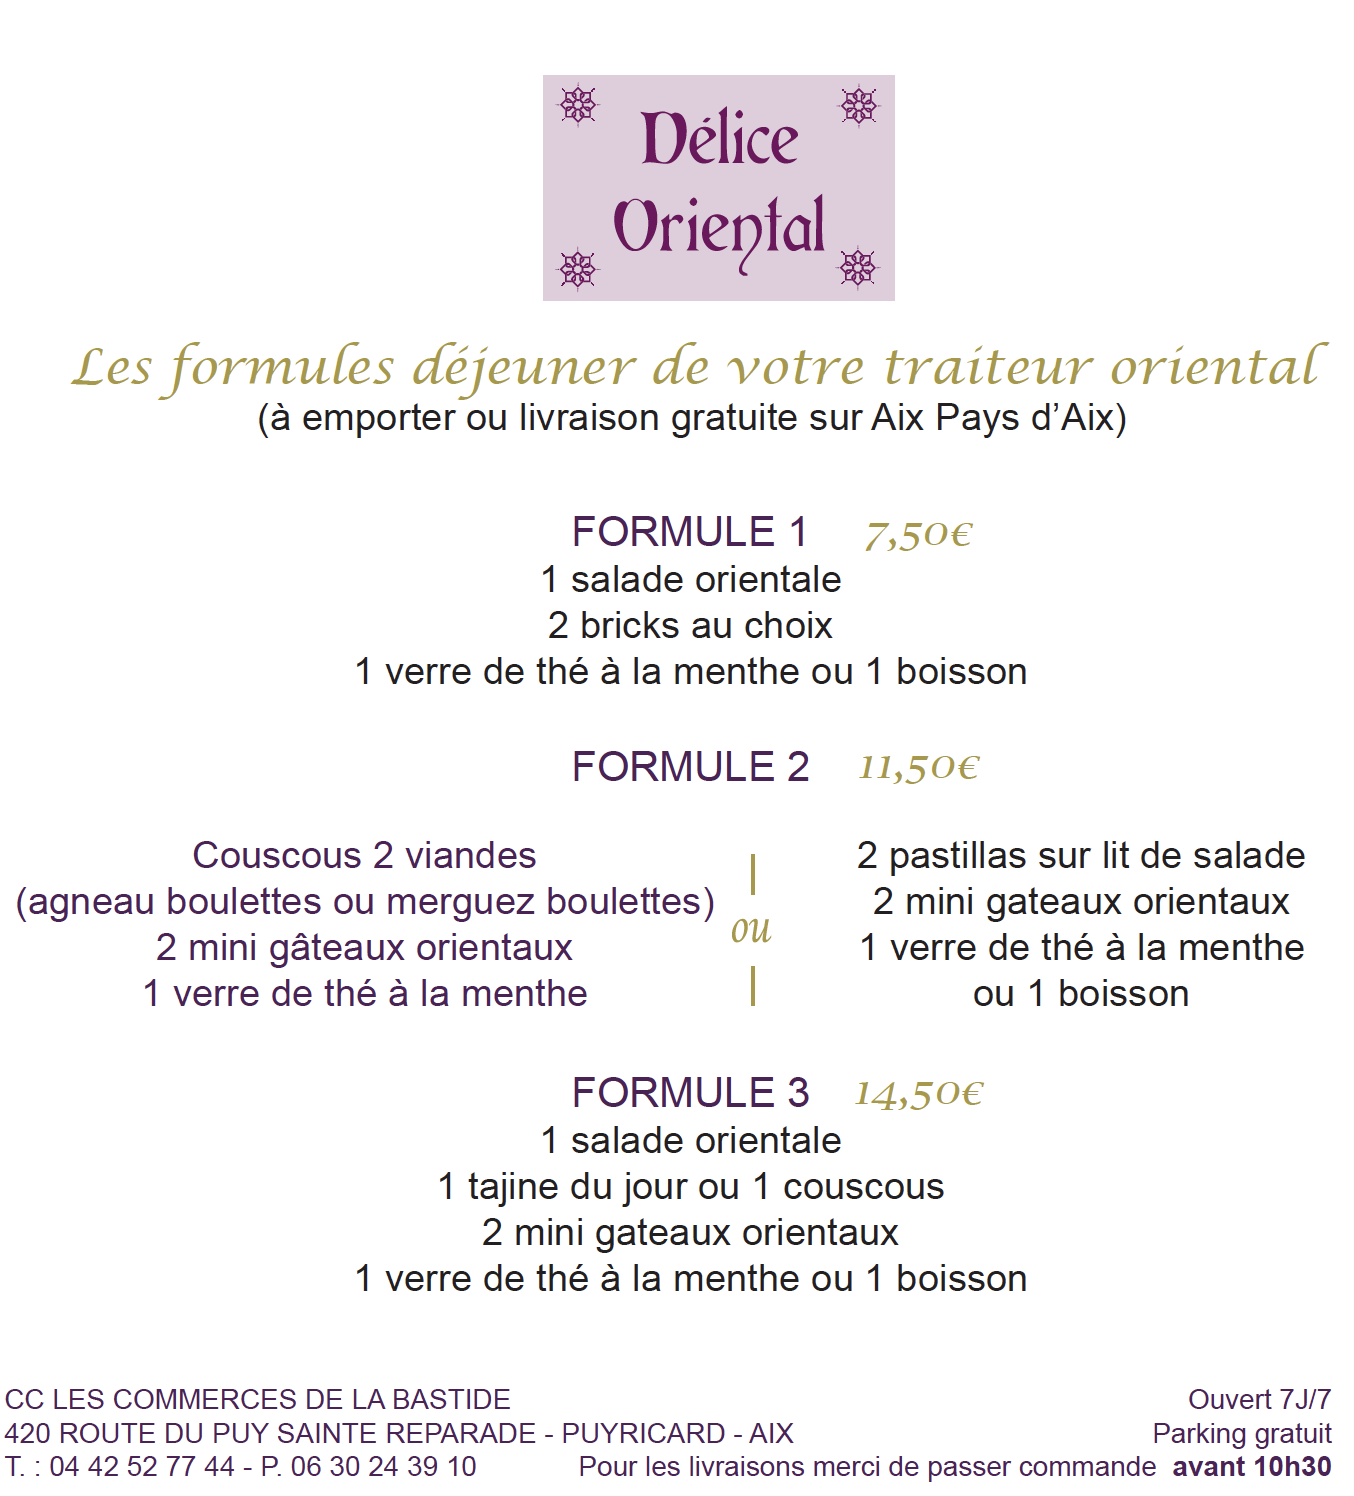 Les Commerces de la Bastide-Délice Oriental-flyer-formules-2020-11-2